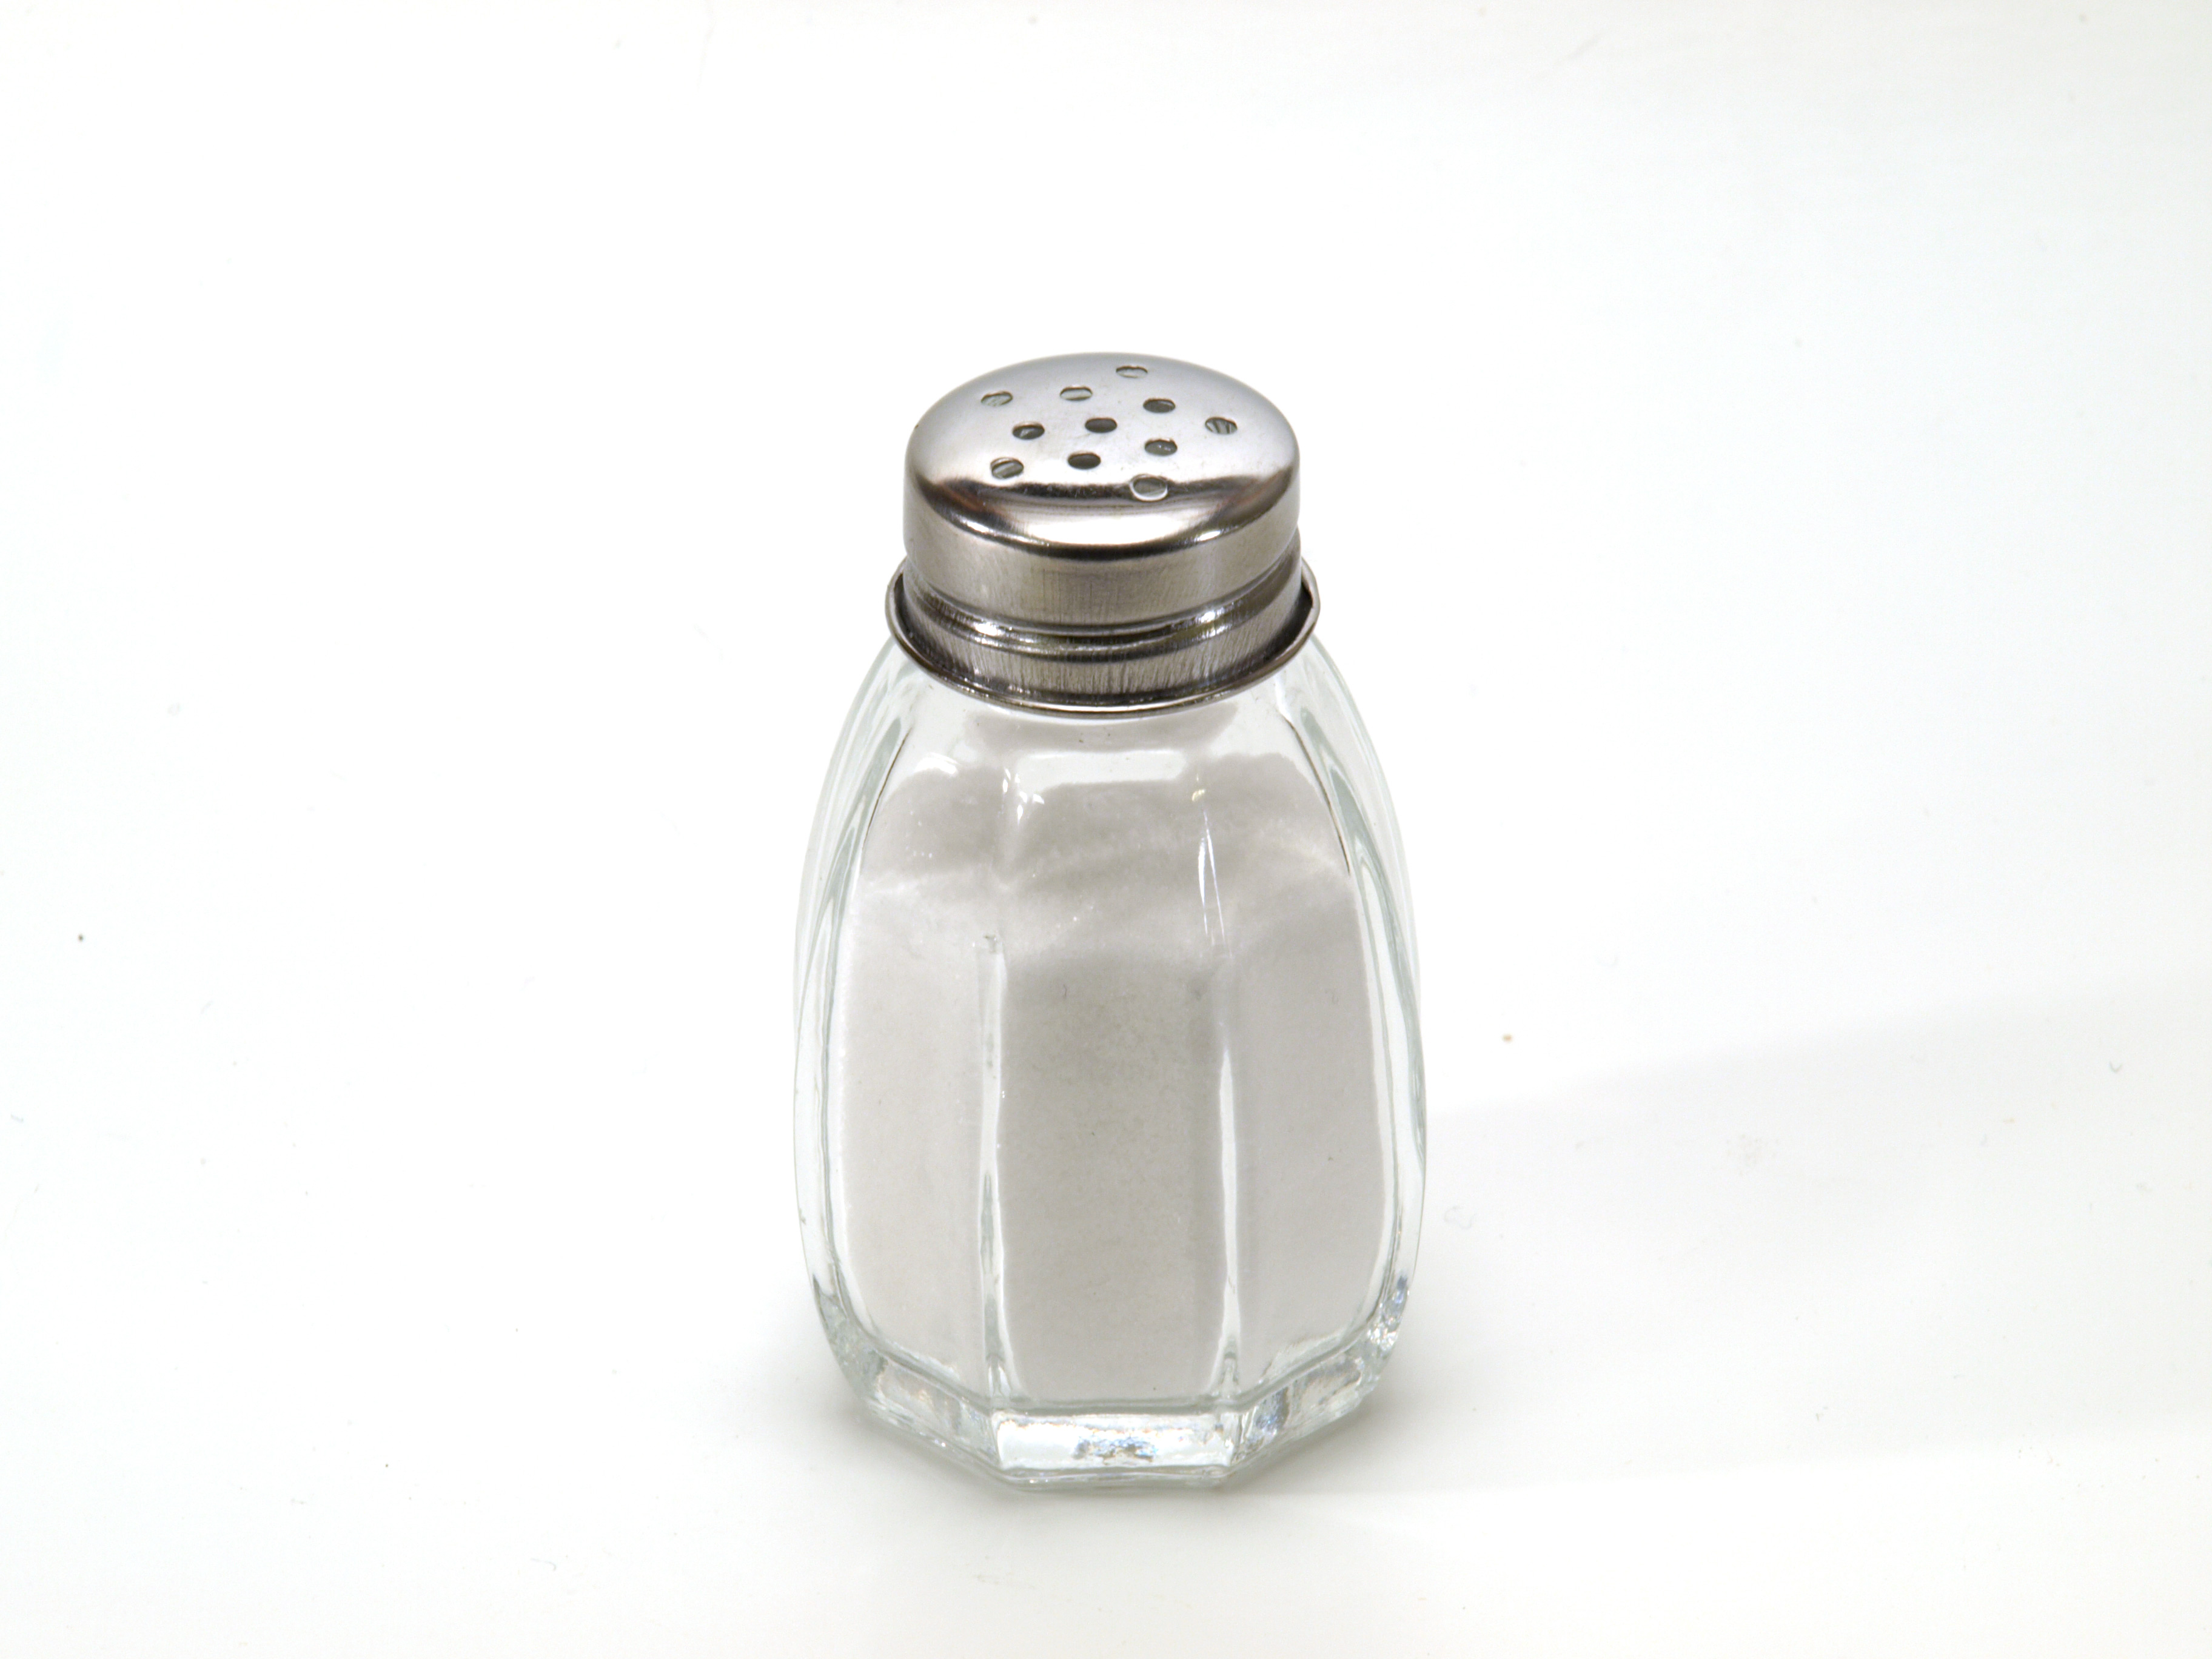 File:White grain of salt.jpg - Wikimedia Commons